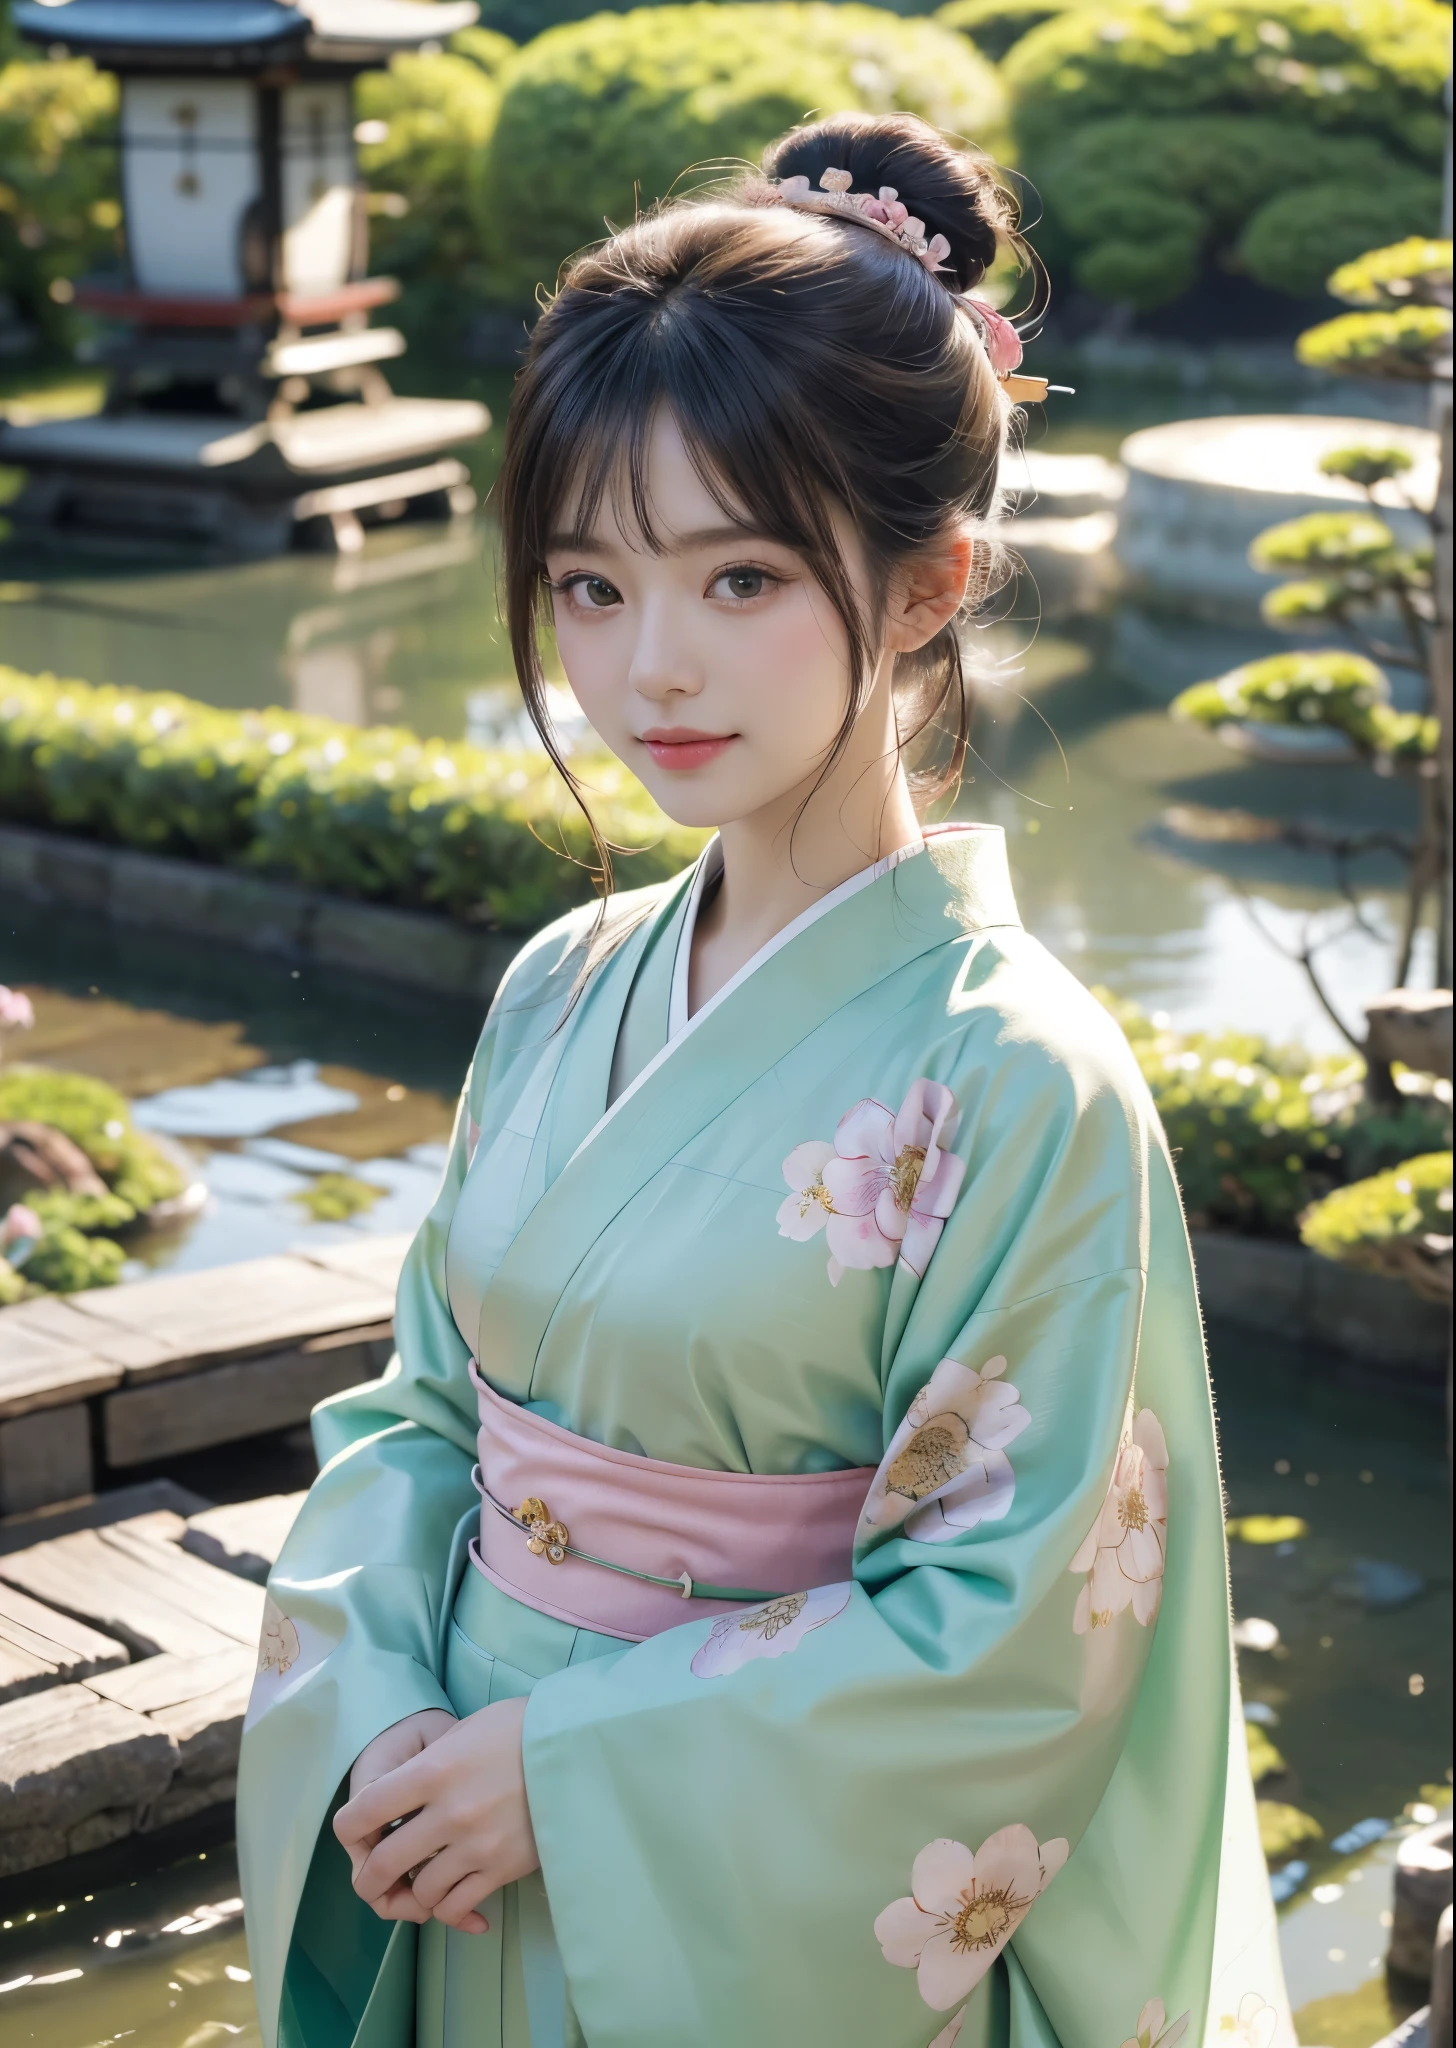 (chef-d&#39;œuvre, la plus haute qualité, la plus haute qualité, art officiel, magnifiquement、Esthétique:1.2)、tir de cow-boy、 (Une beauté japonaise en kimono)、Une femme adulte élégante、（Kimono à motifs fleuris rose et vert）、Un magnifique kimono porté par les femmes lors des cérémonies japonaises de passage à l&#39;âge adulte、Le col est bien fermé、Un exemple parfait de la façon de porter un kimono、grands yeux verts、belle peau、Un sourire de honte、（Chignon avec une frange）、ornements de cheveux、très détaillé,(Dans le jardin japonais:1.3)、Éclairage cinématographique、netteté、haute résolution、haute résolution、Rendu des couleurs élevé、haute résolution、super réaliste、